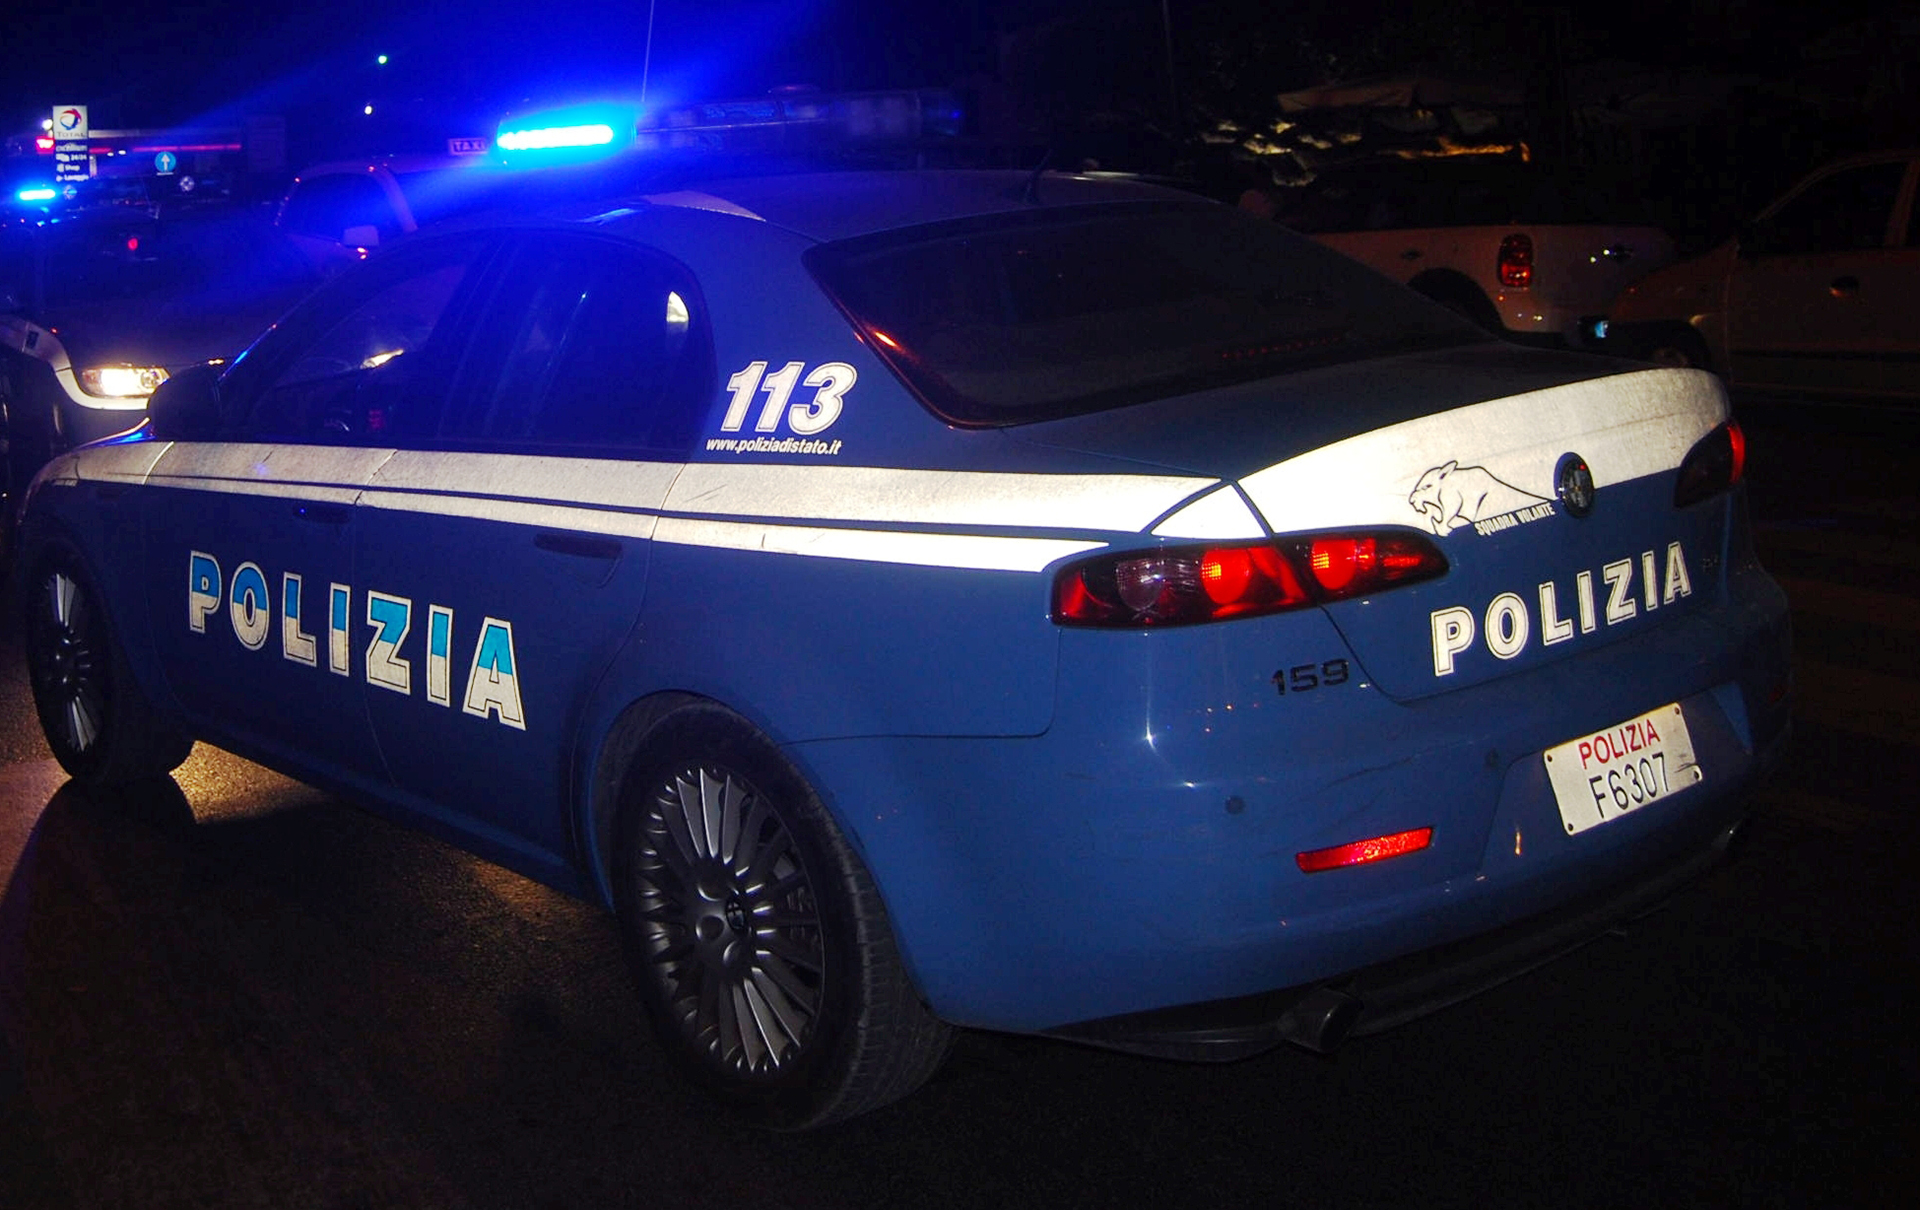 Ruba in mesticheria: i poliziotti gli trovano addosso 150 euro di merce non pagata